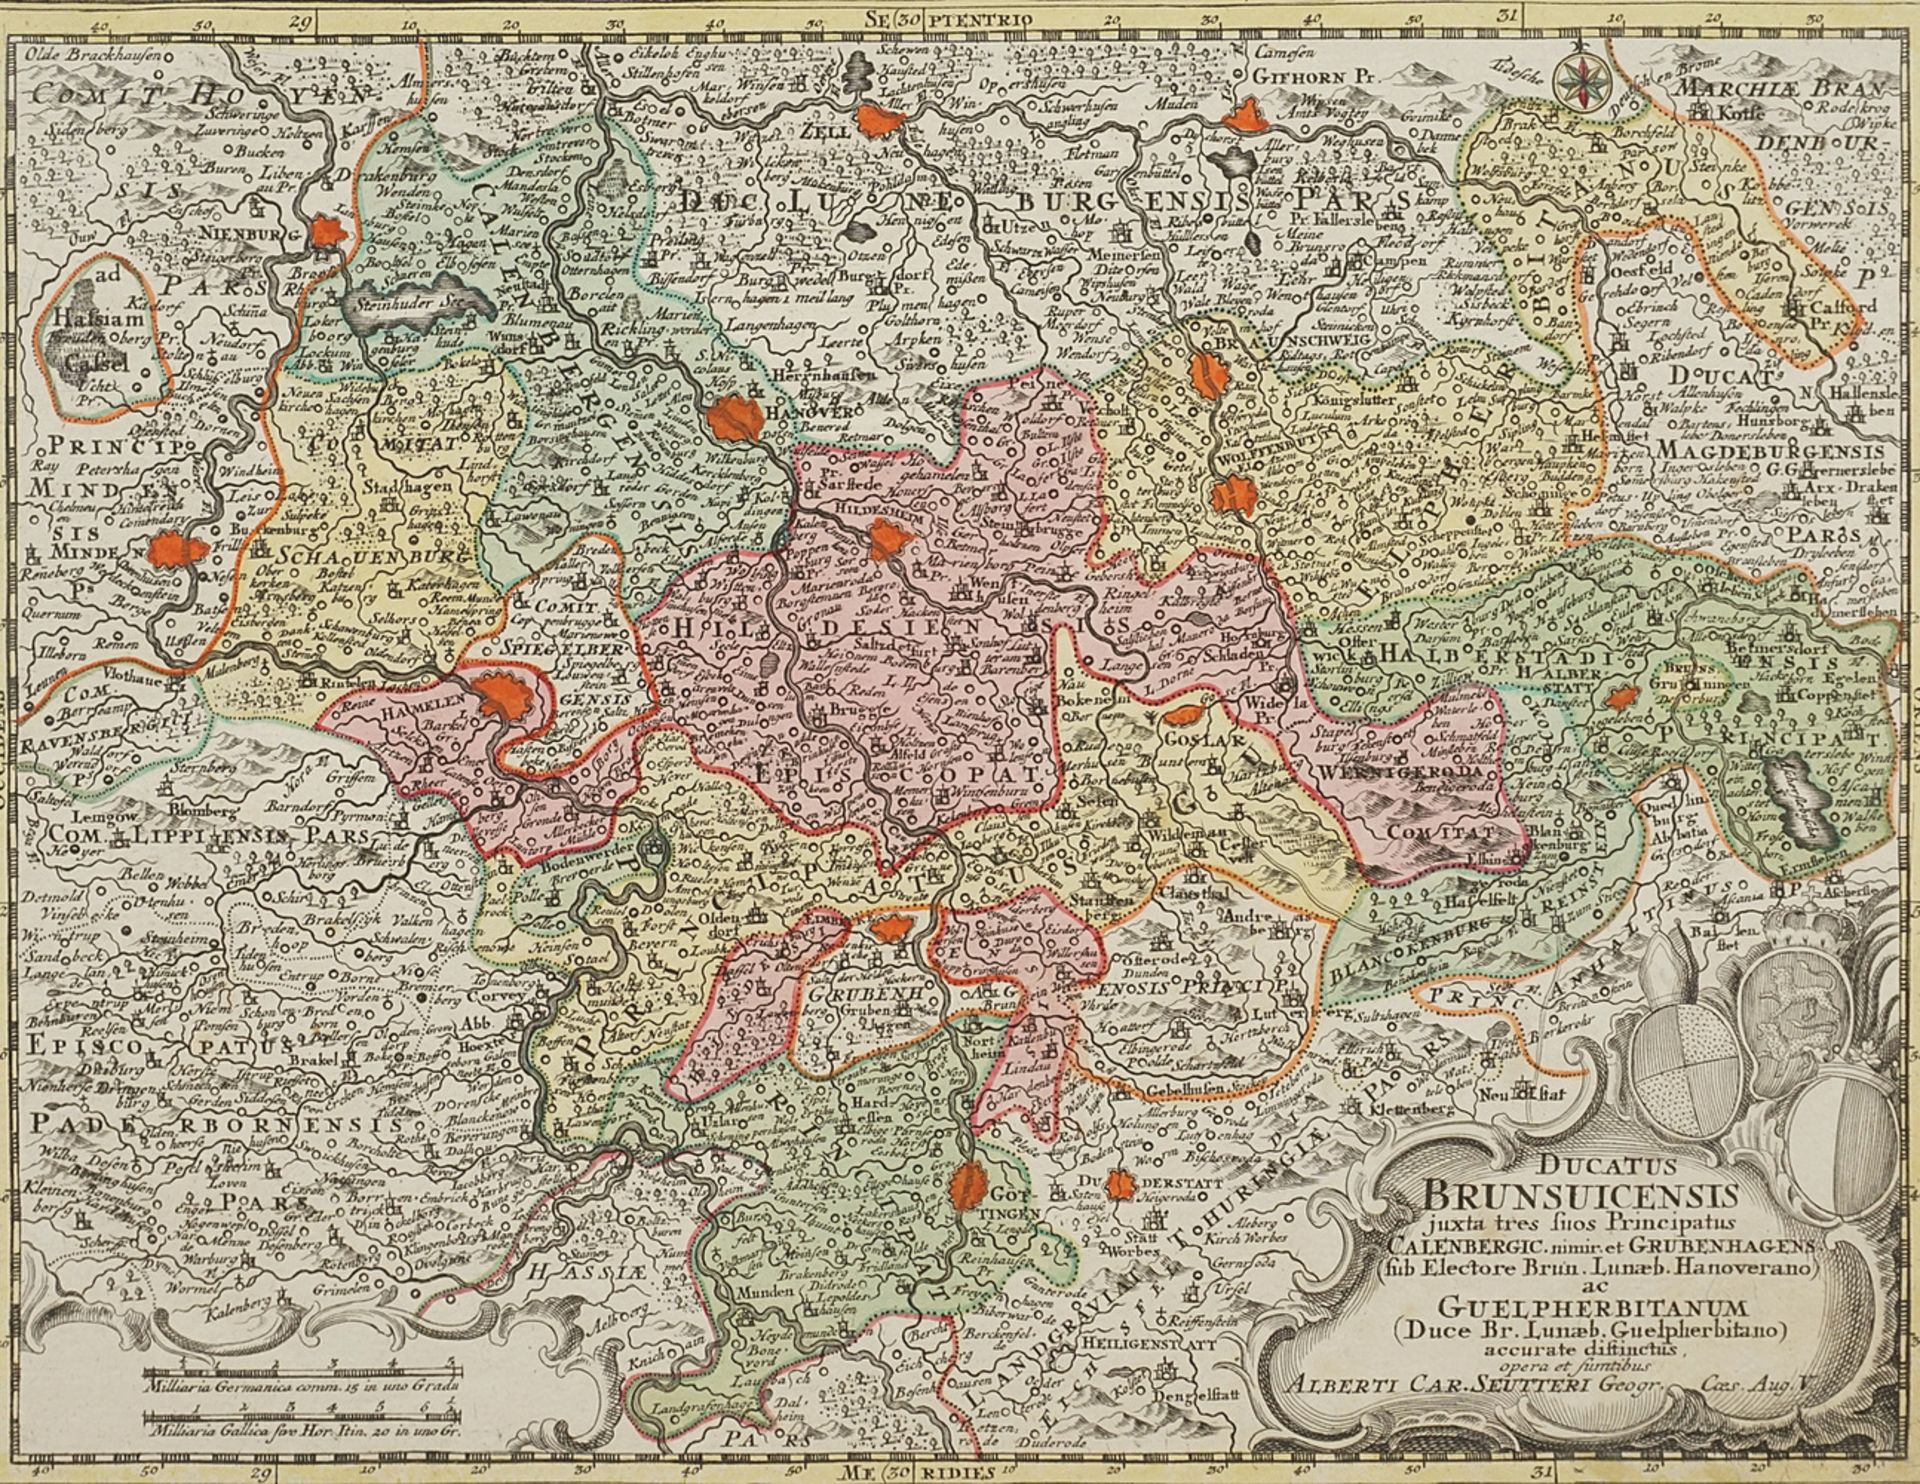 Albrecht Carl Seutter (1722-1762), Map of the Duchy of Brunswick